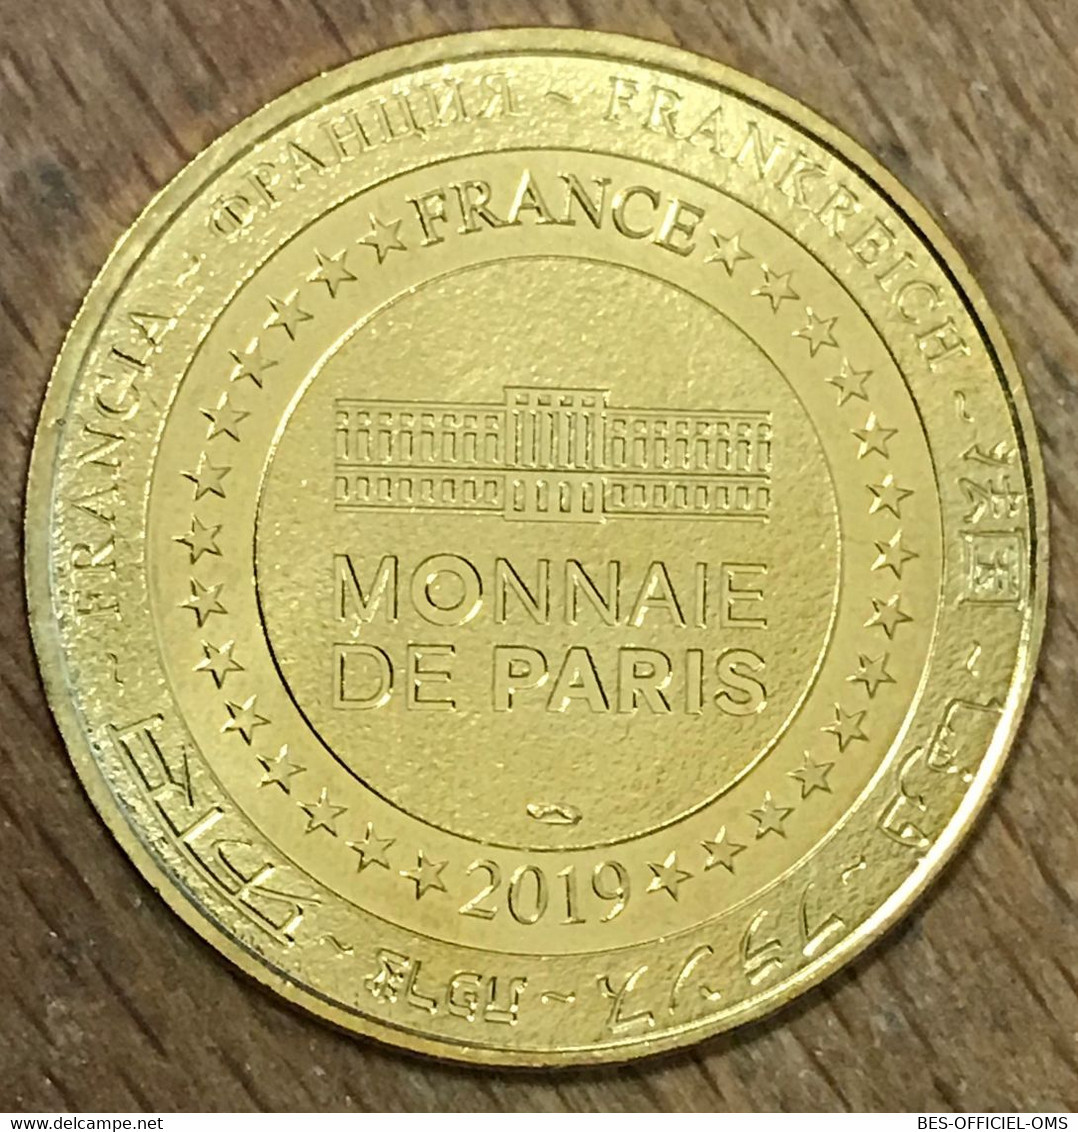 77 DISNEYLAND PARIS MICKEY MOUSE PARTY DISNEY MDP 2019 MÉDAILLE MONNAIE DE PARIS JETON TOURISTIQUE MEDALS COINS TOKENS - 2019